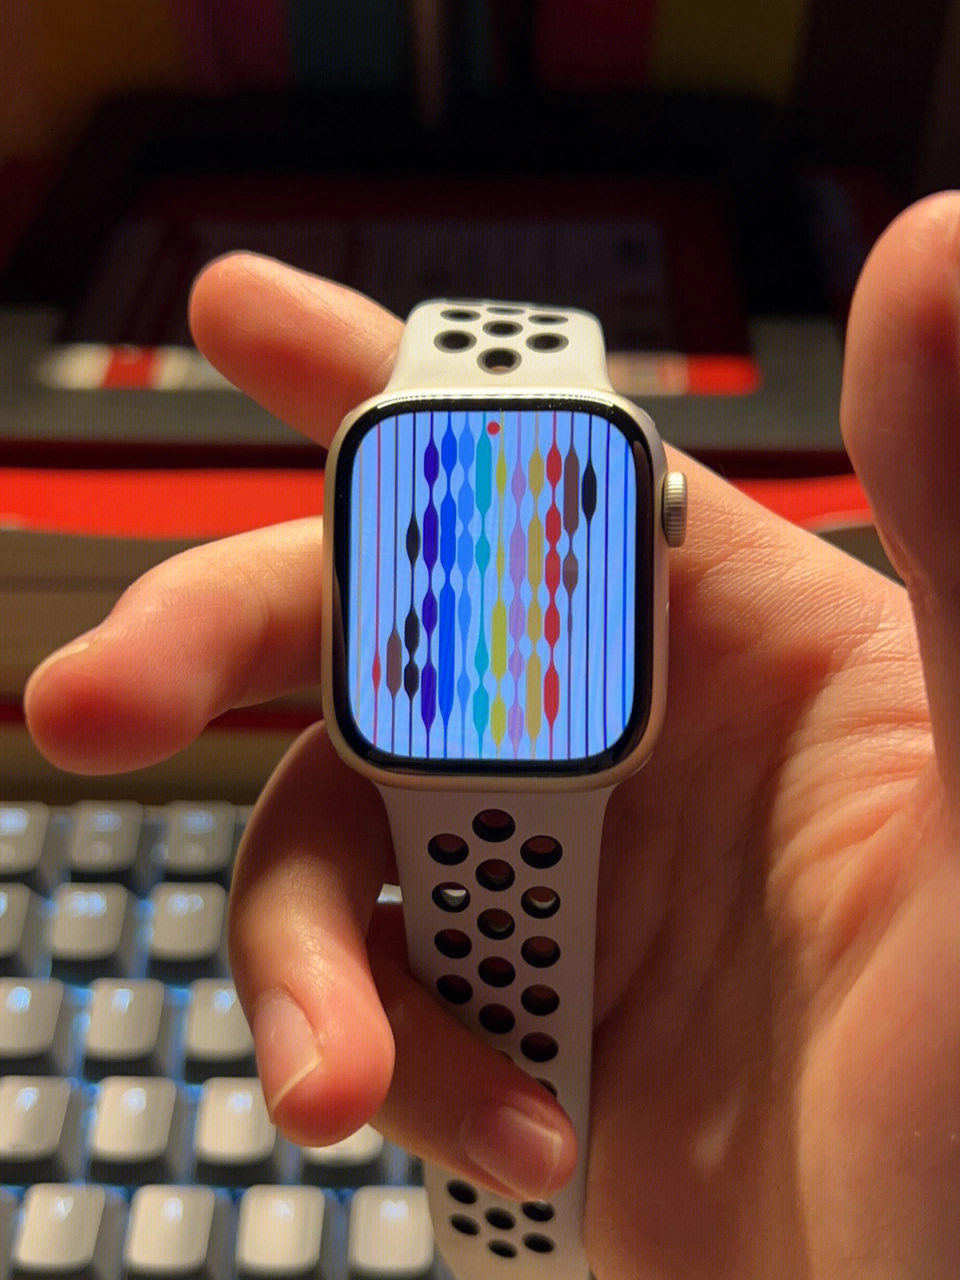 Apple Watch彩虹表盘图片